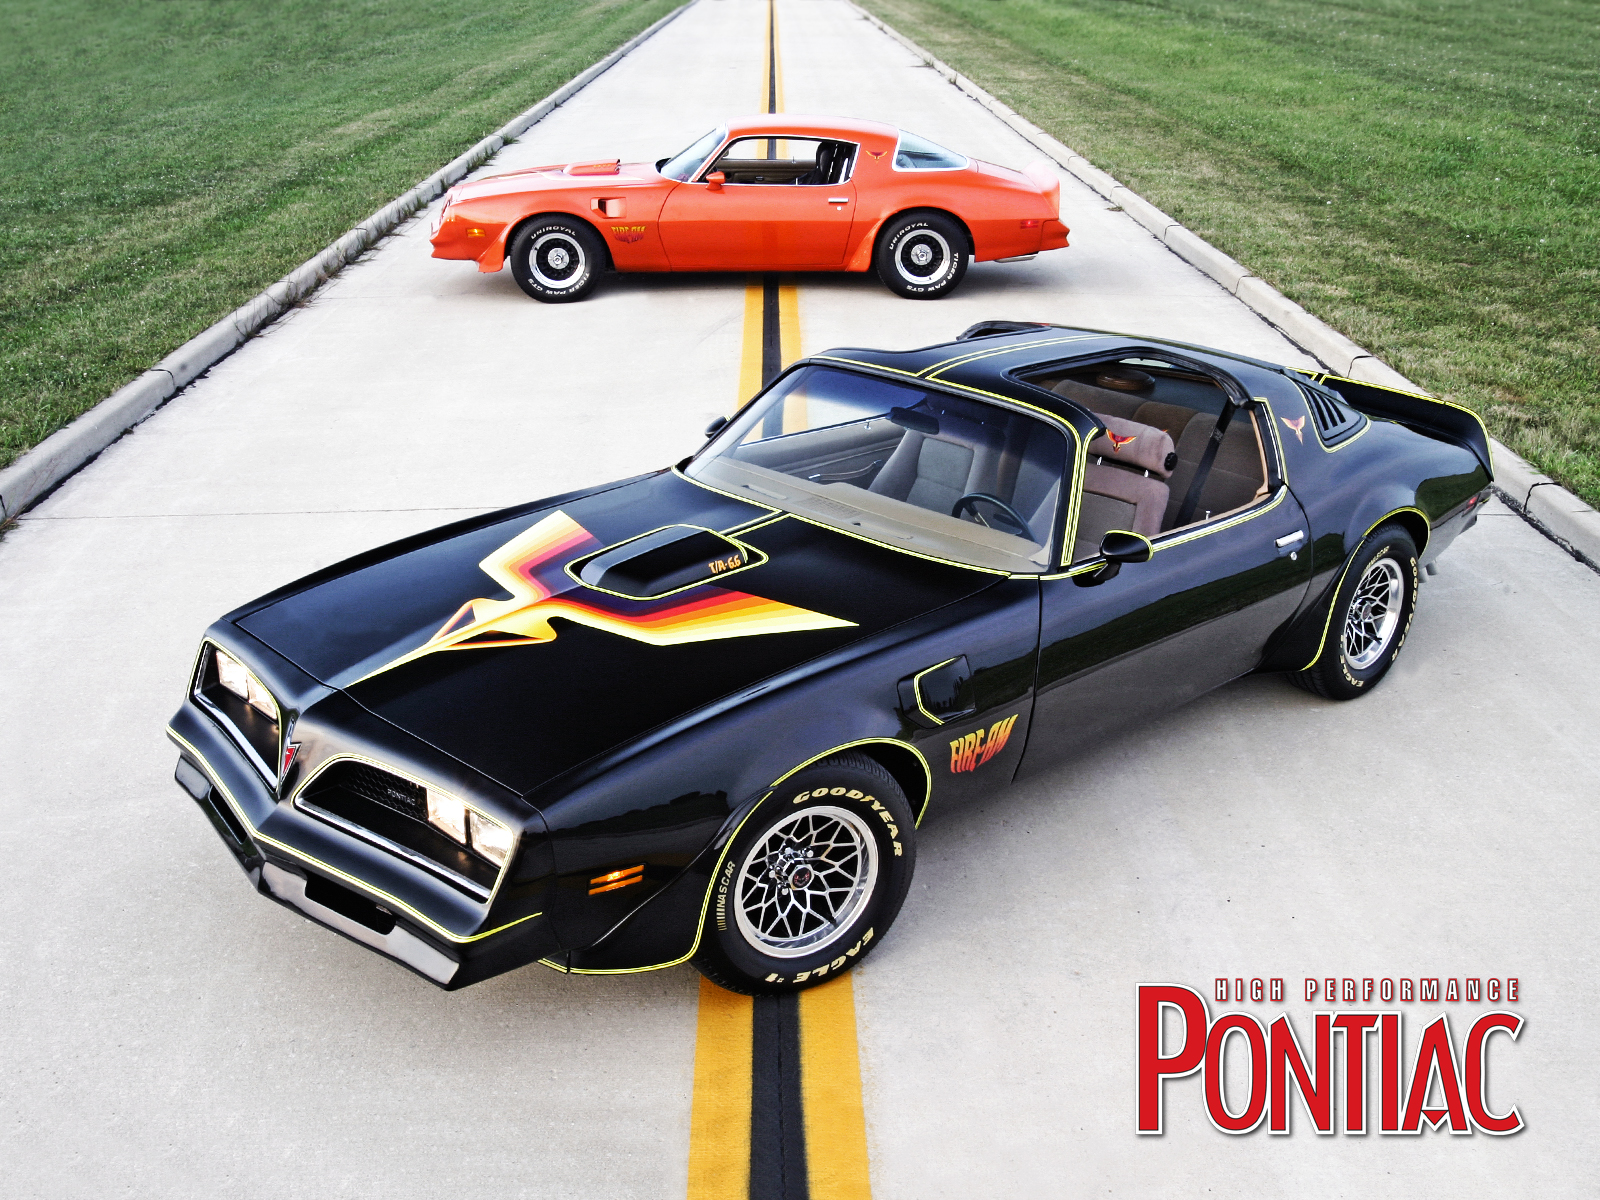 Pontiac Firebird 1978 Trans Am , HD Wallpaper & Backgrounds